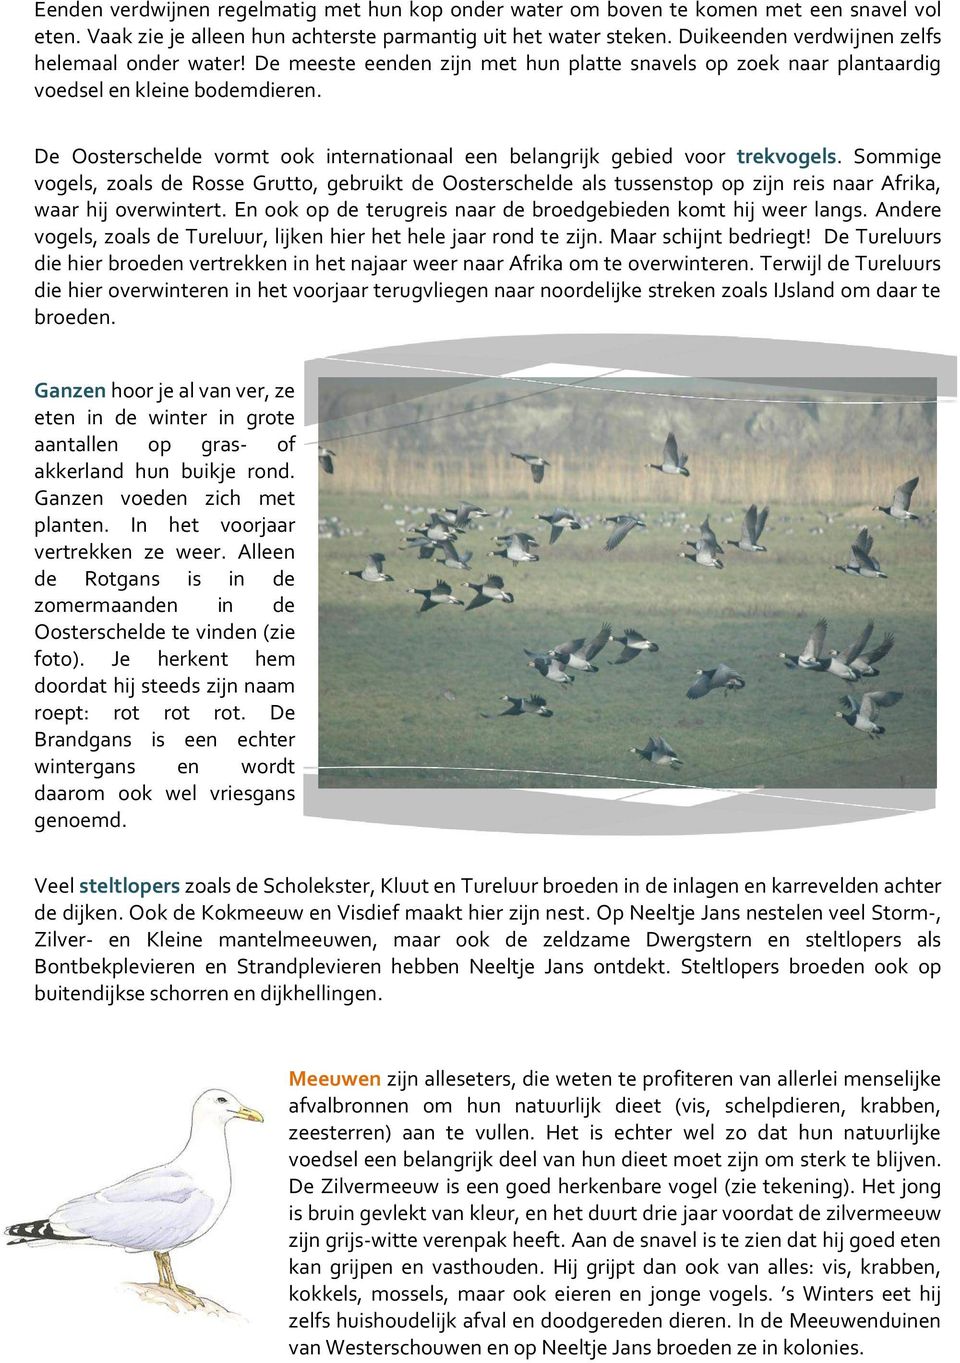 De Oosterschelde vormt ook internationaal een belangrijk gebied voor trekvogels.